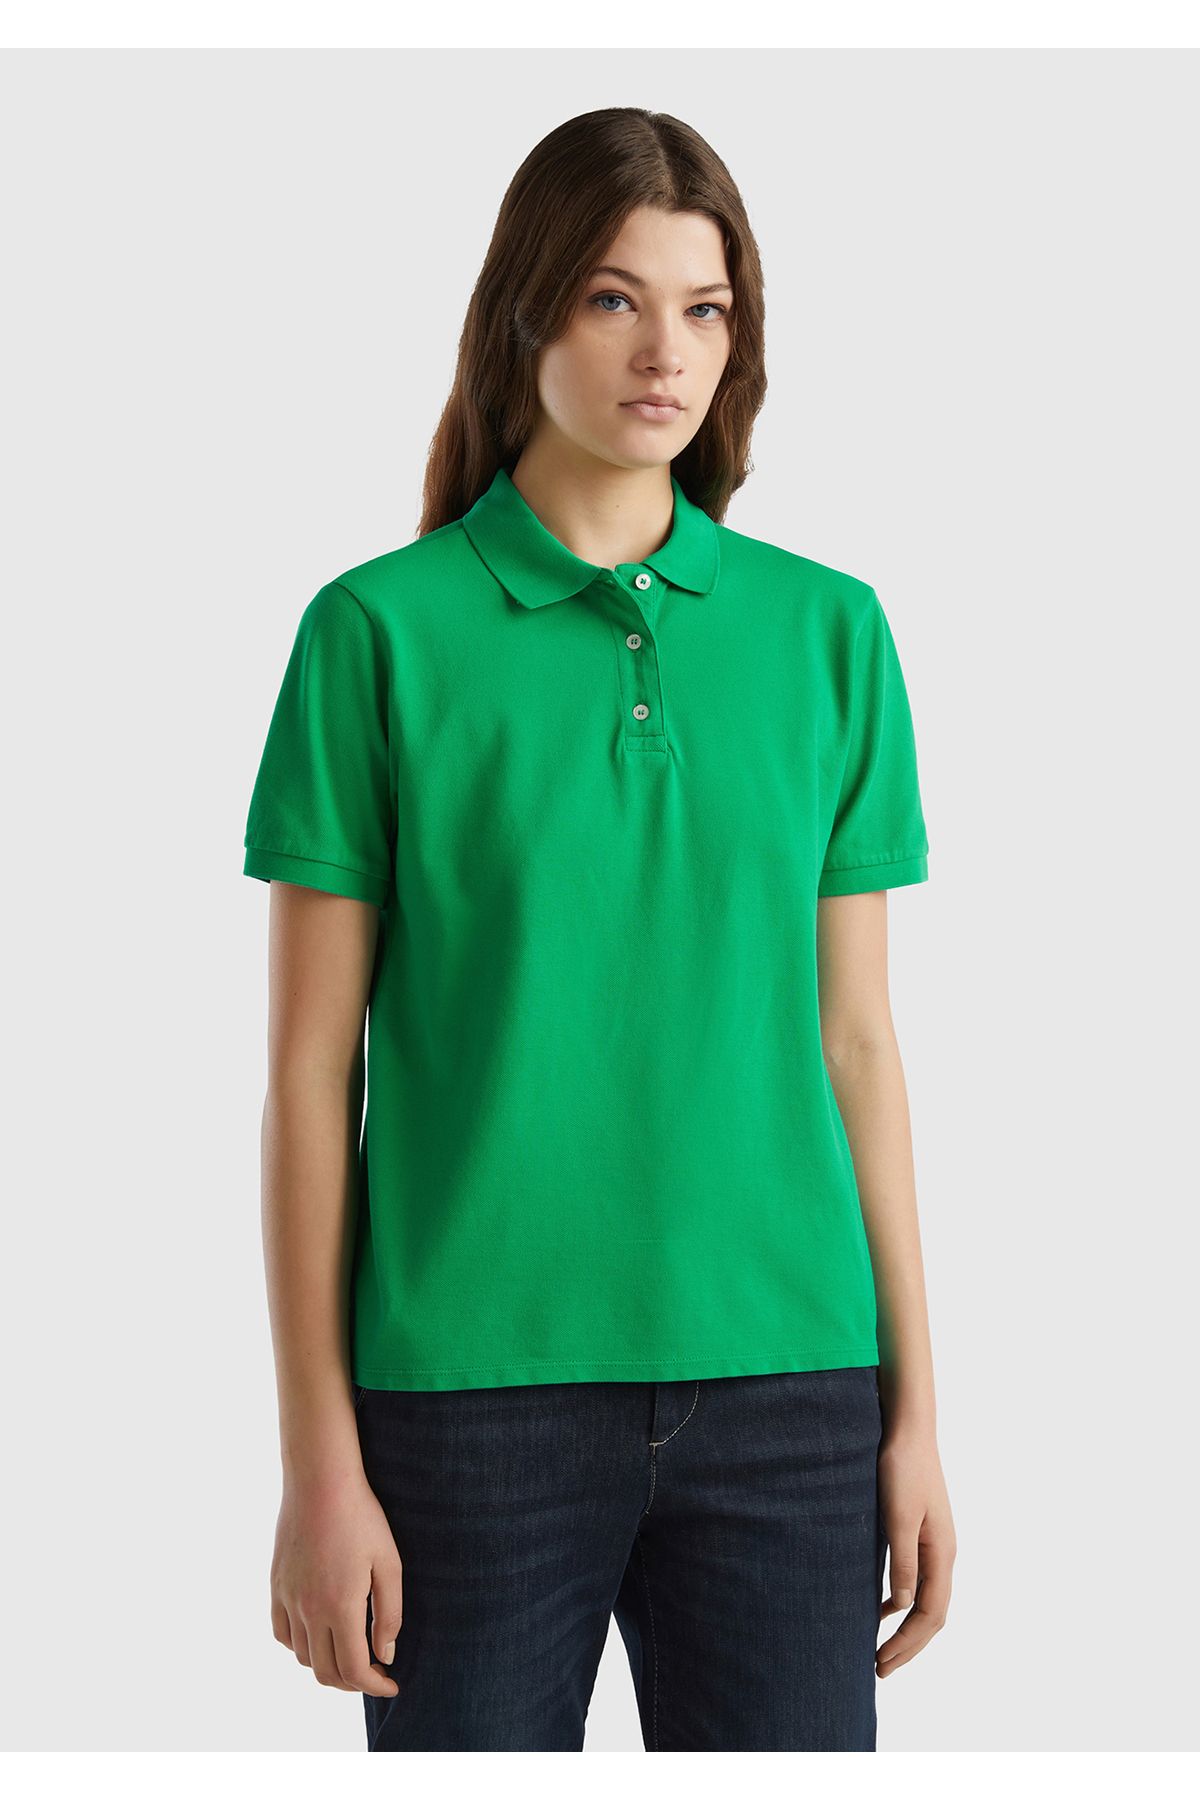 United Colors of Benetton Kadın Yeşil Streç Pamuklu Sol Altı Logo Baskılı Polo T-Shirt